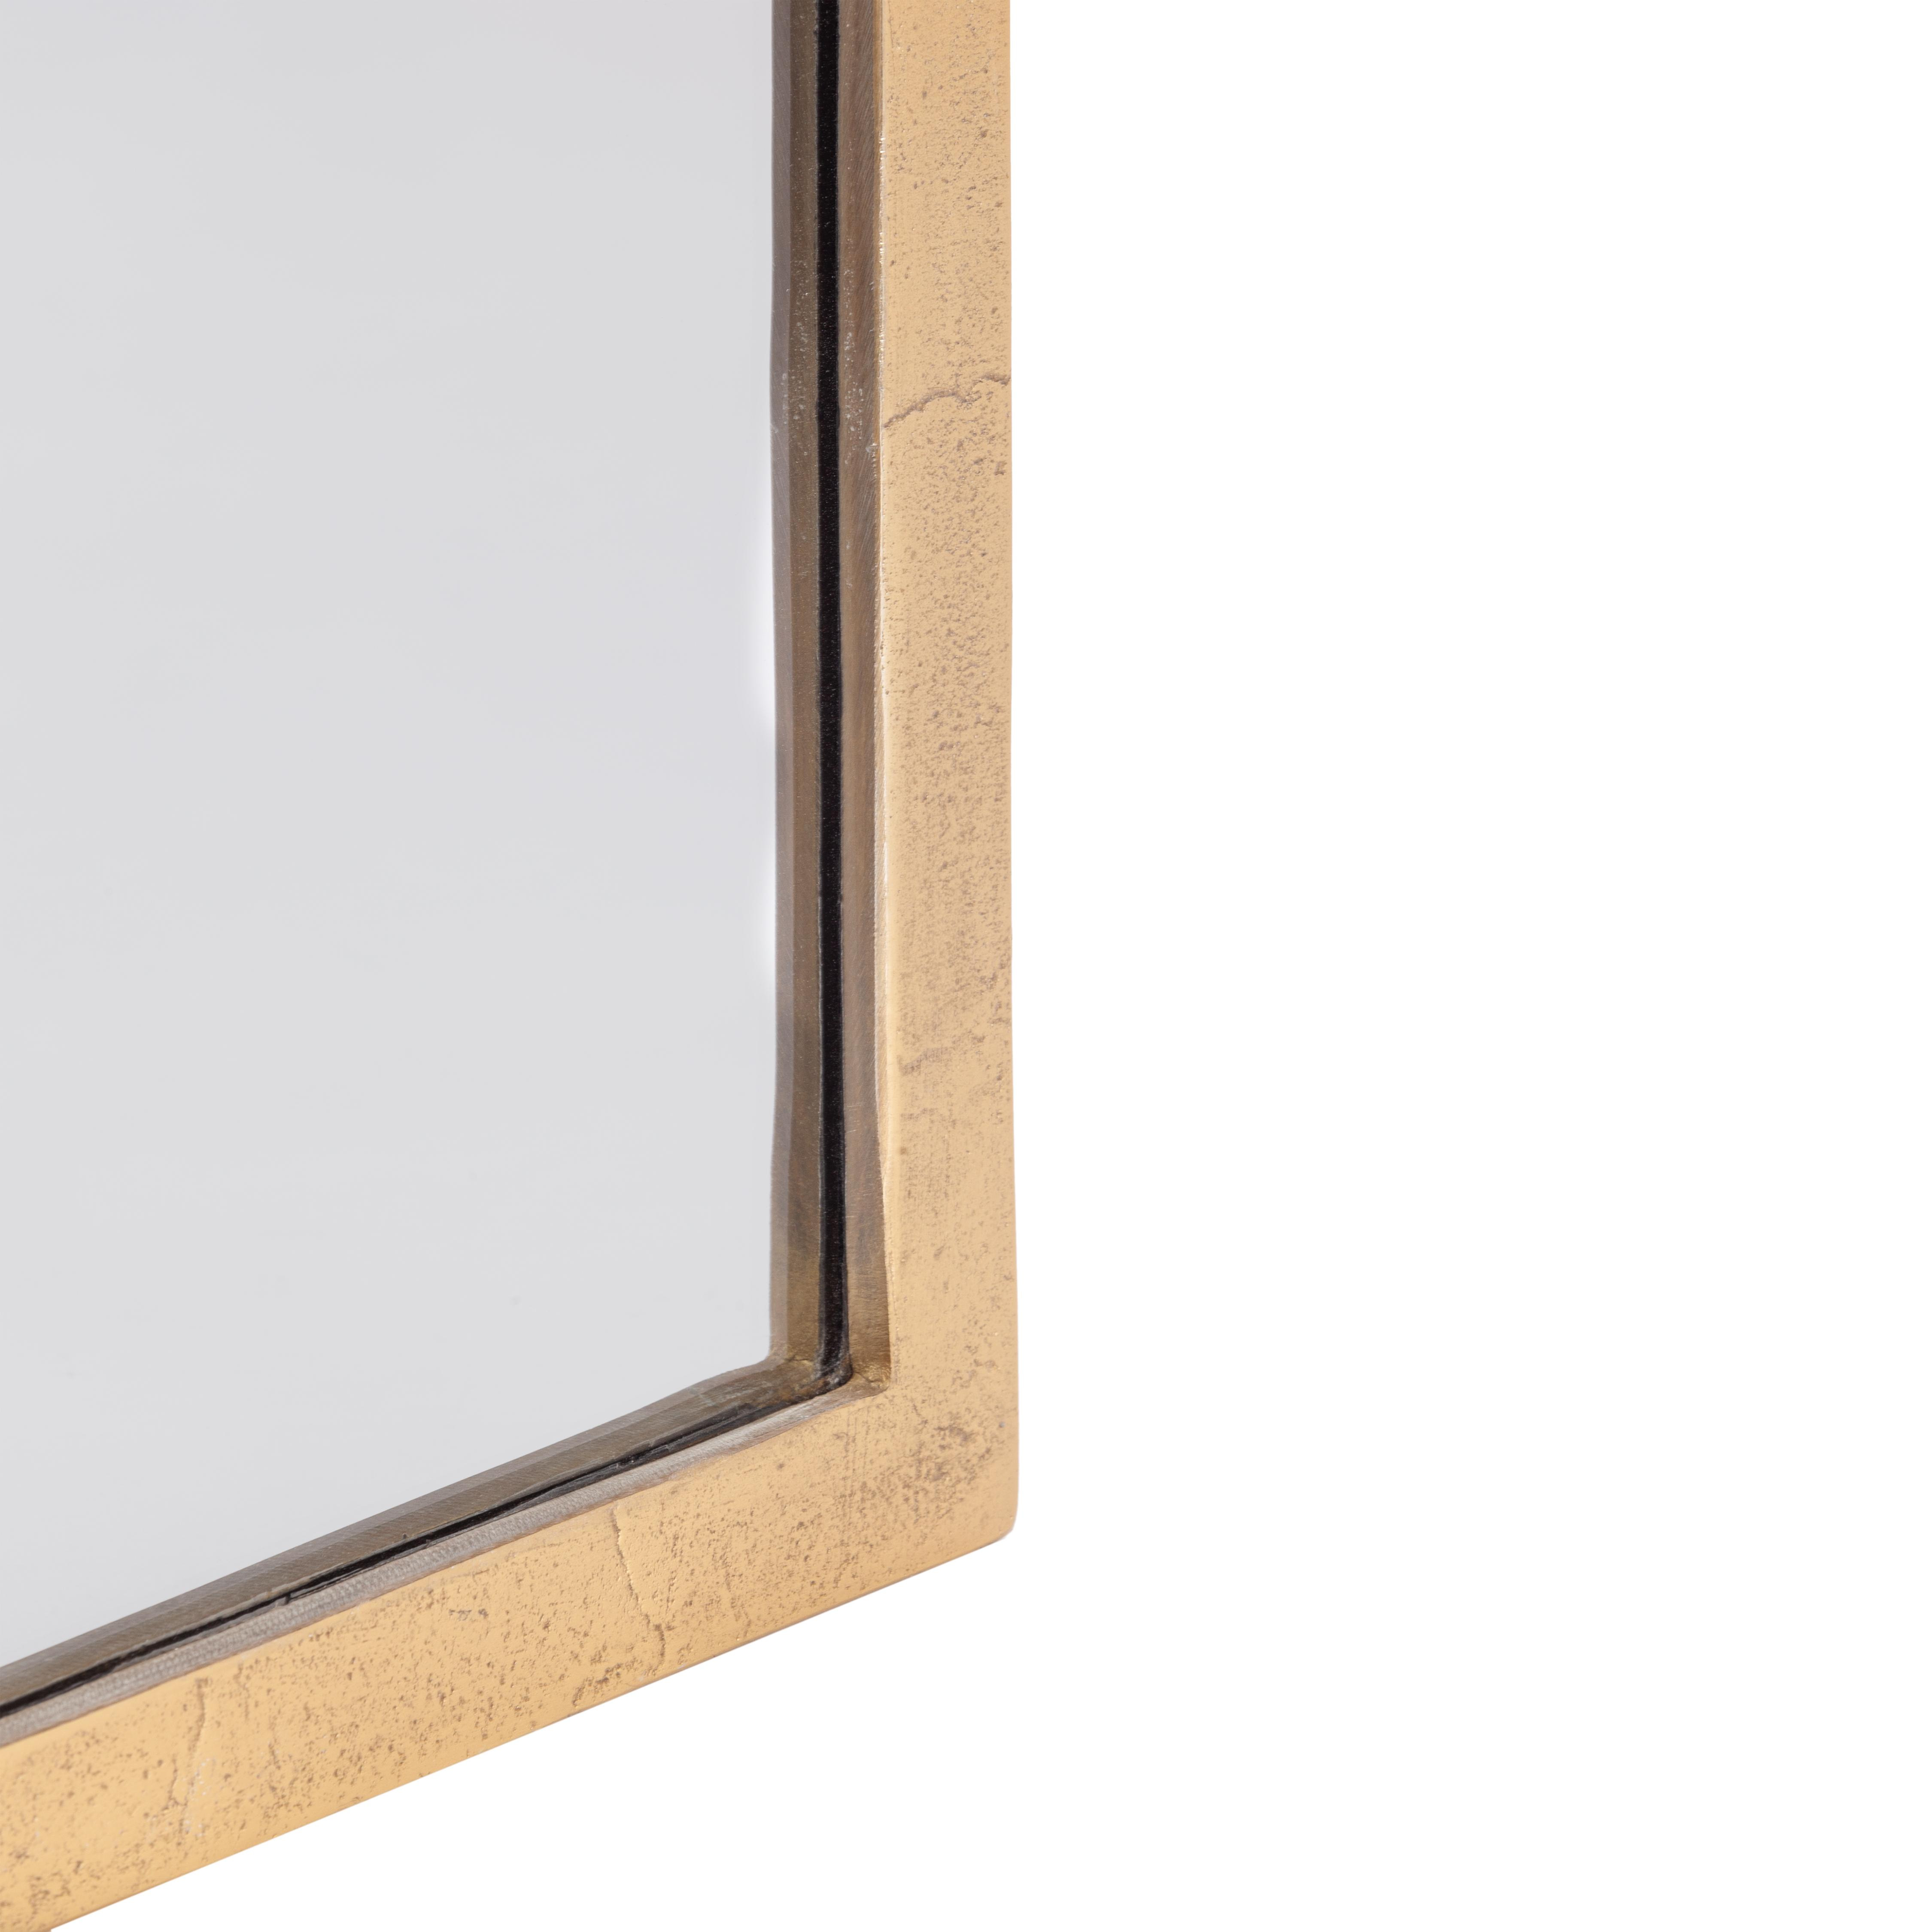 Зеркало Secret De Maison WINDOW ( mod. LS-0169 ) металл: аллюминий, стекло, мдф,  60 х 45 х 5 см, золотой